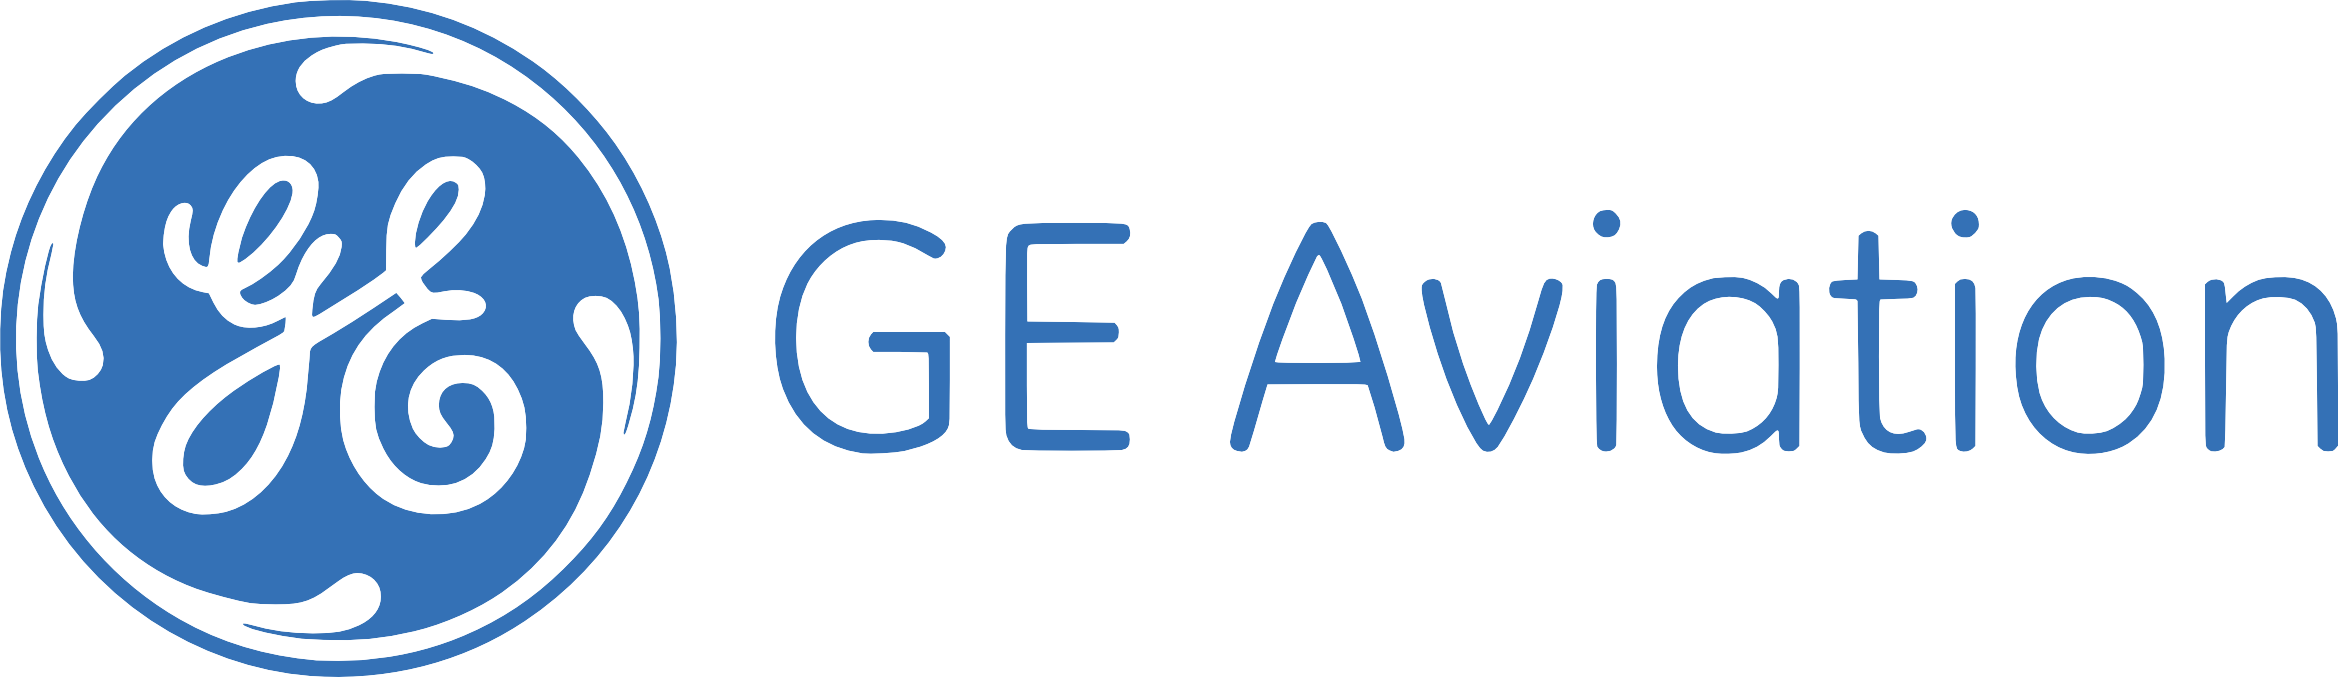 GE aviation hires  engineers